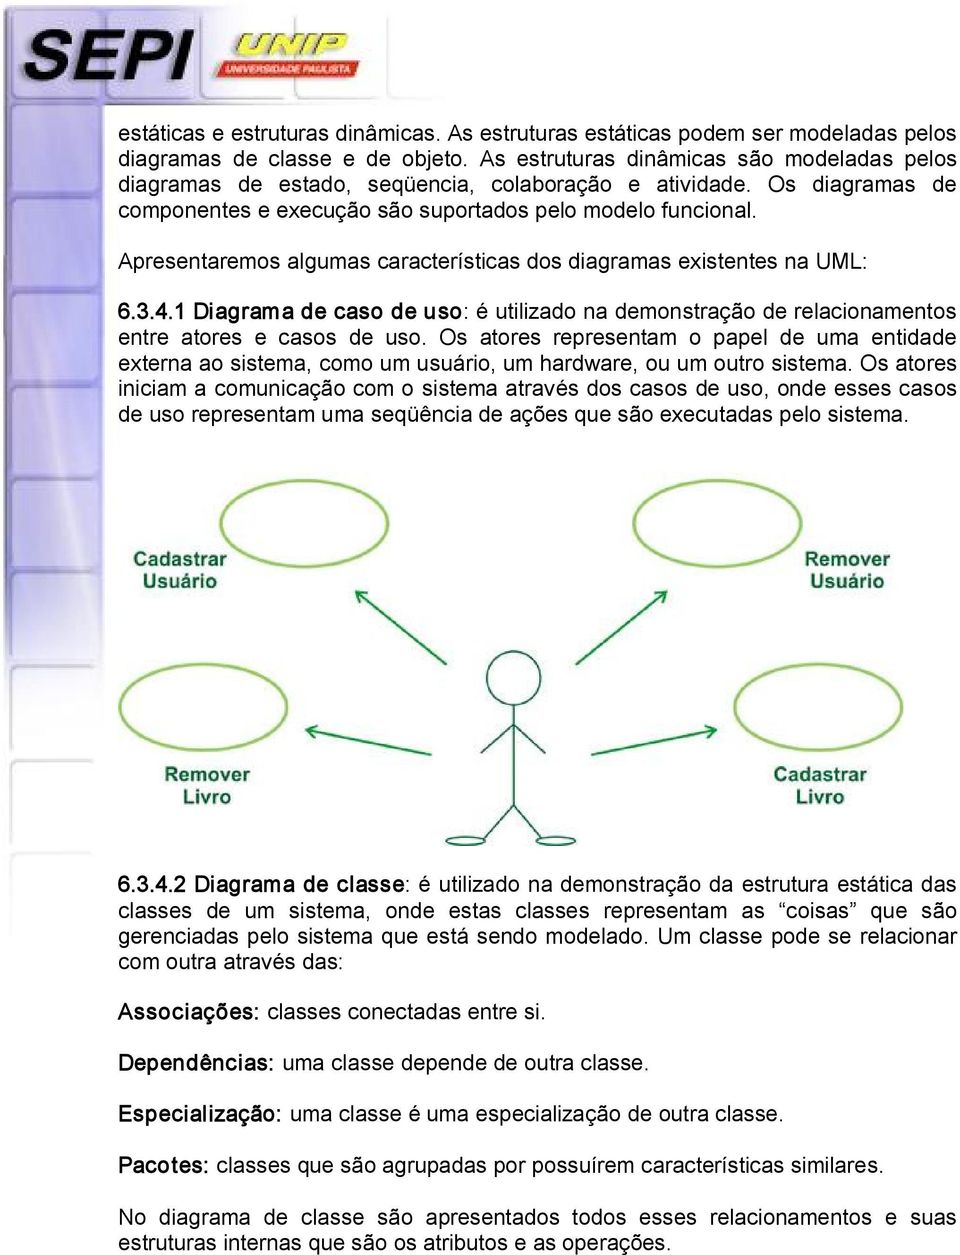 Apresentaremos algumas características dos diagramas existentes na UML: 6.3.4.1 Diagrama de caso de uso: é utilizado na demonstração de relacionamentos entre atores e casos de uso.